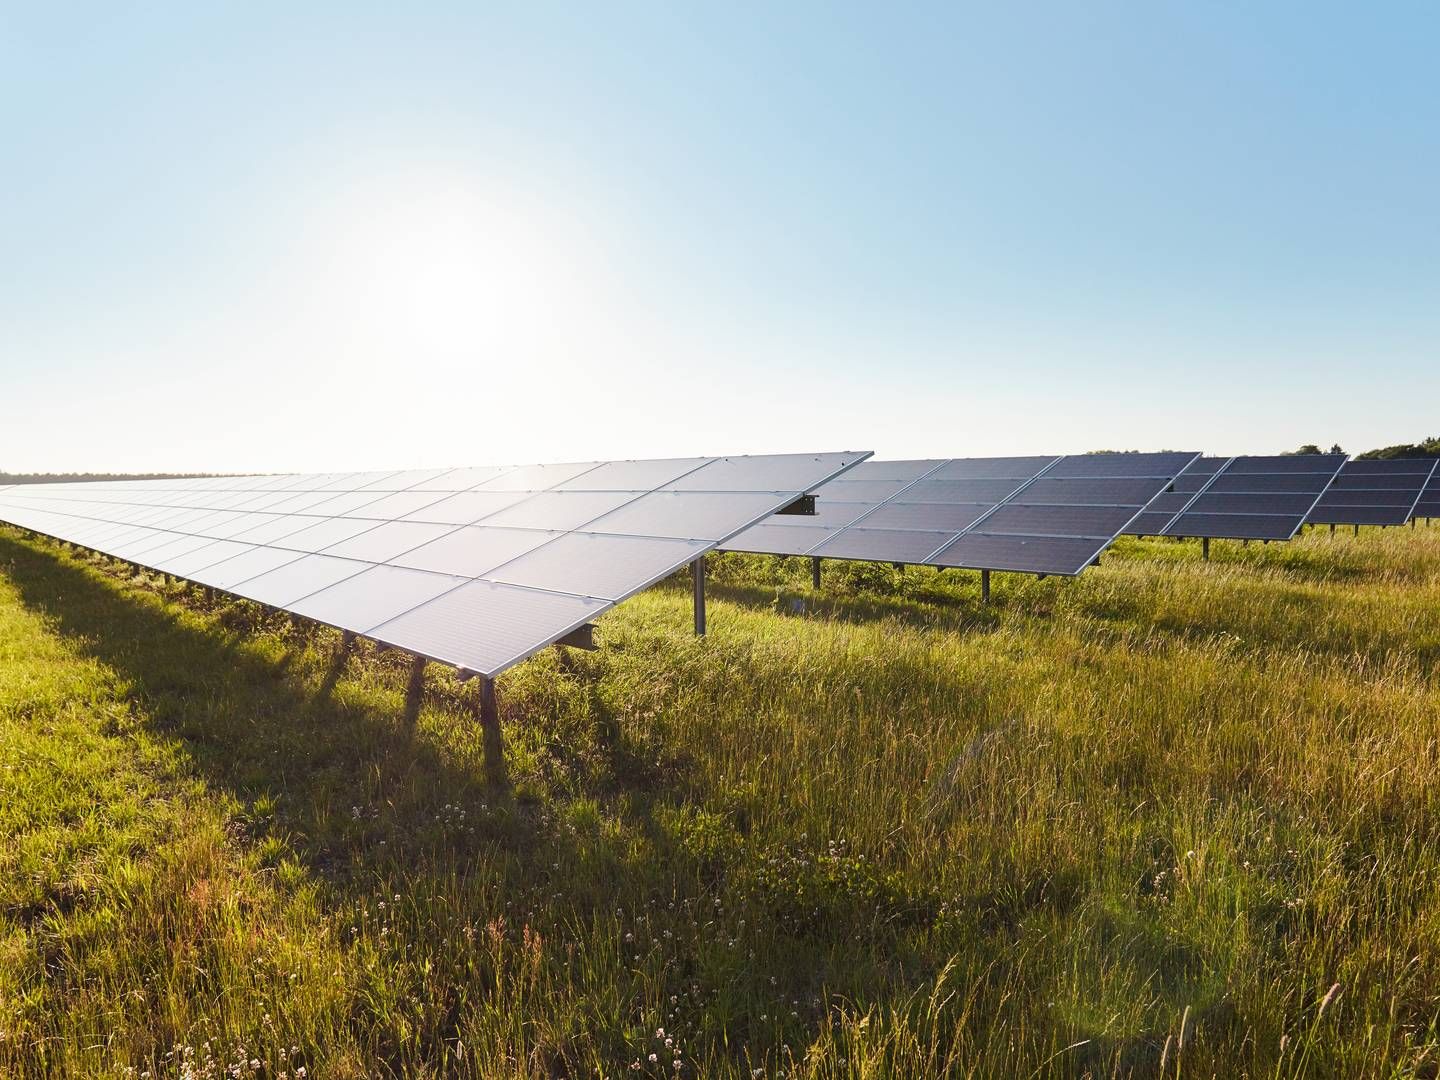 Solcelleanlæg kan være en vej til hurtig udbygning af vedvarende energi, da de er langt hurtigere at opføre end f.eks. havvindmølleparker. Det kræver dog, at godkendelsesprocesserne bliver hurtigere, og at elnettet udbygges. | Foto: Better Energy